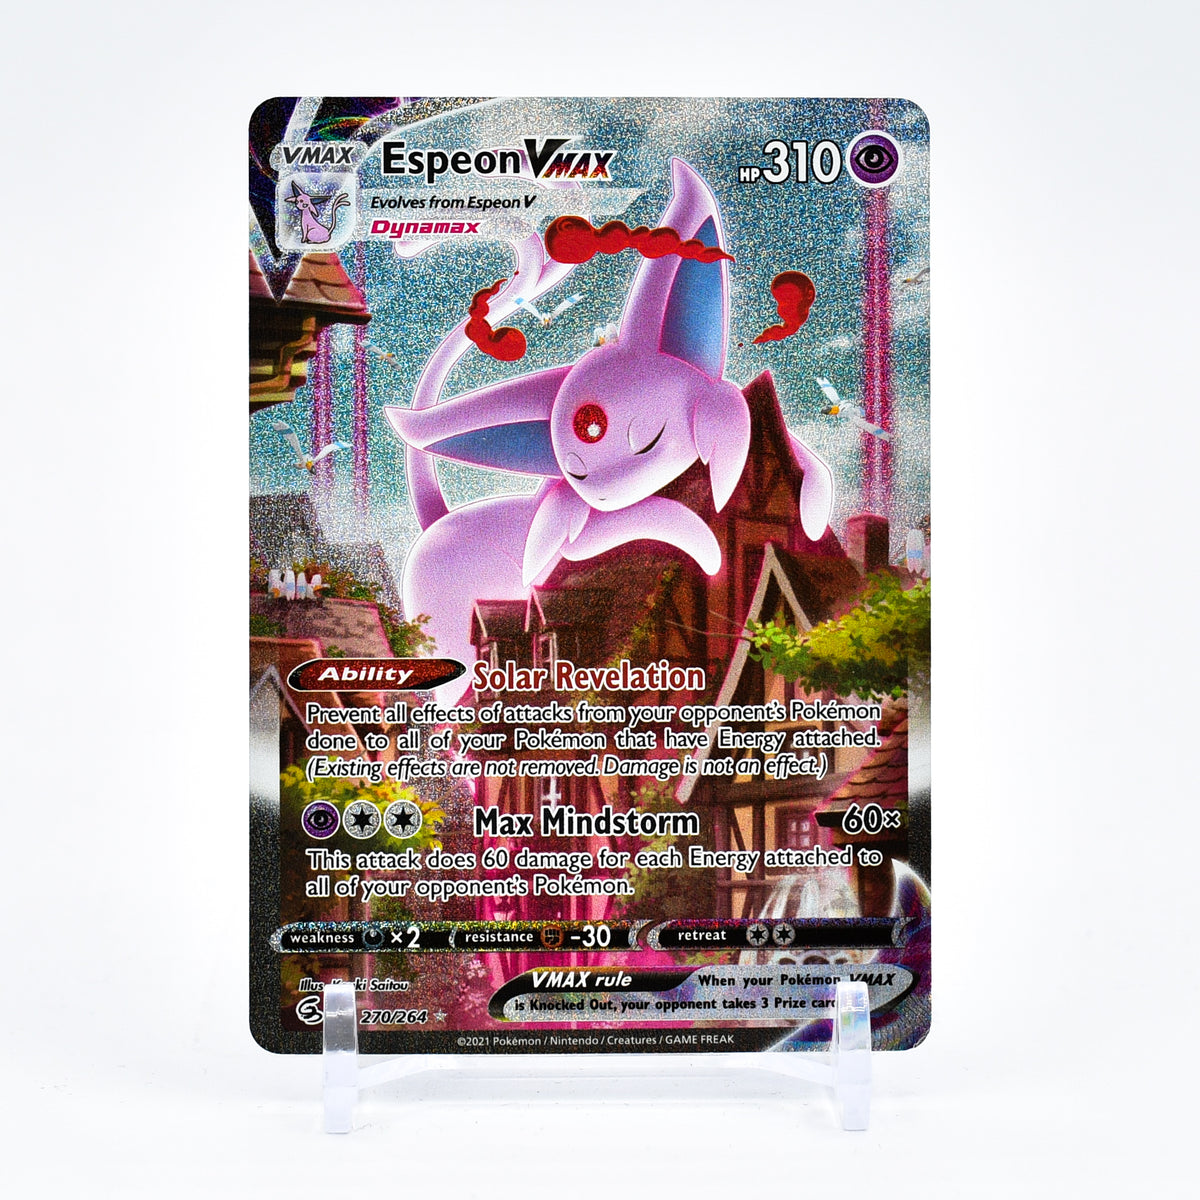 Kartana - SV33/SV94 Hidden Fates BABY SHINY Holo Rare Pokemon - NM/MIN –  The PokéTrade Emporium